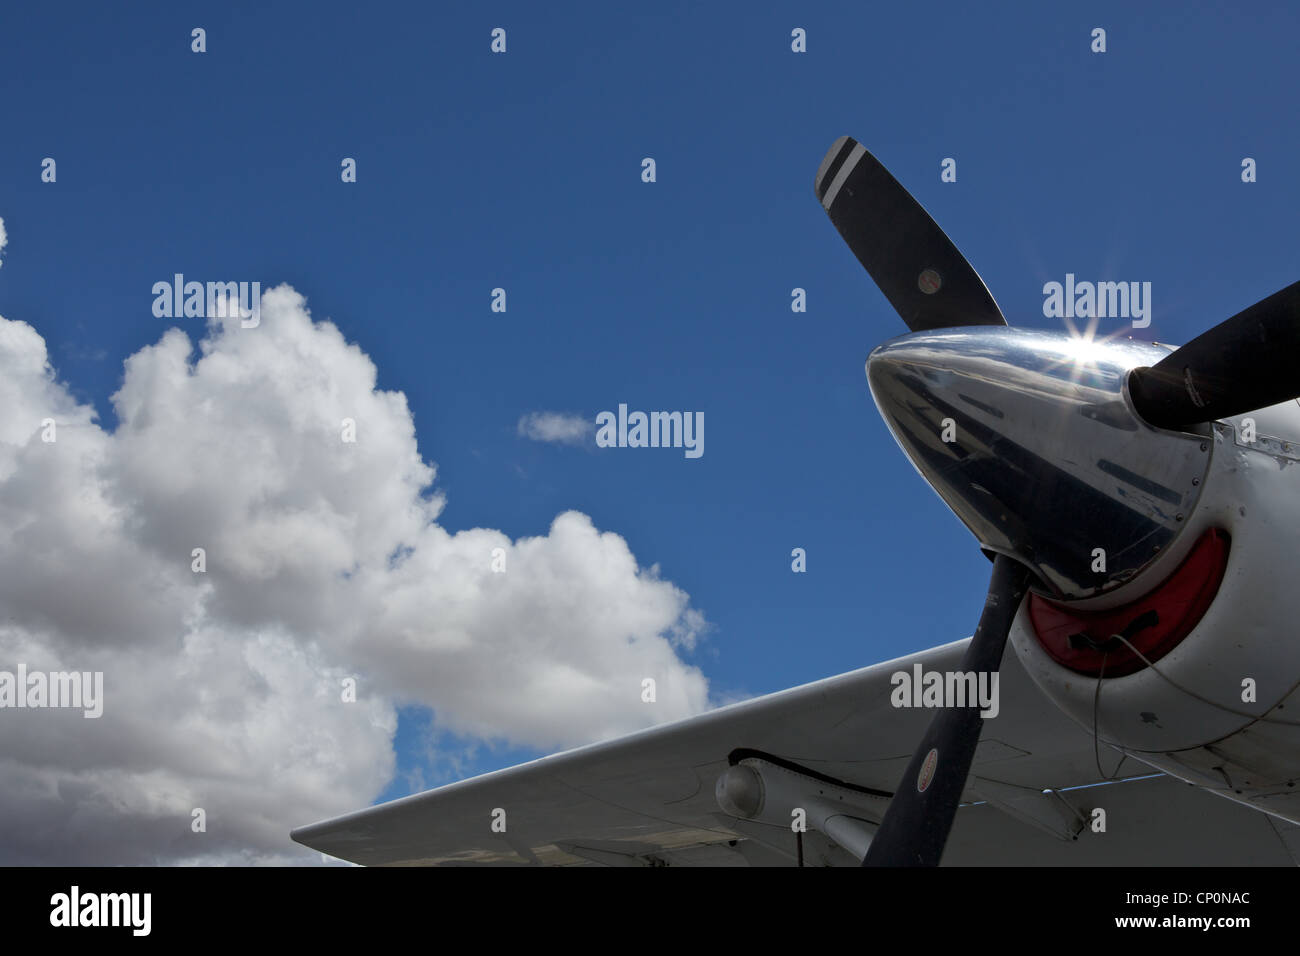 Flugzeug-Propeller und Flügel des Flugzeugs gegen eine blaue Wolke Himmel und Sonne glitzern auf Chrome Requisiten-Kappe Stockfoto